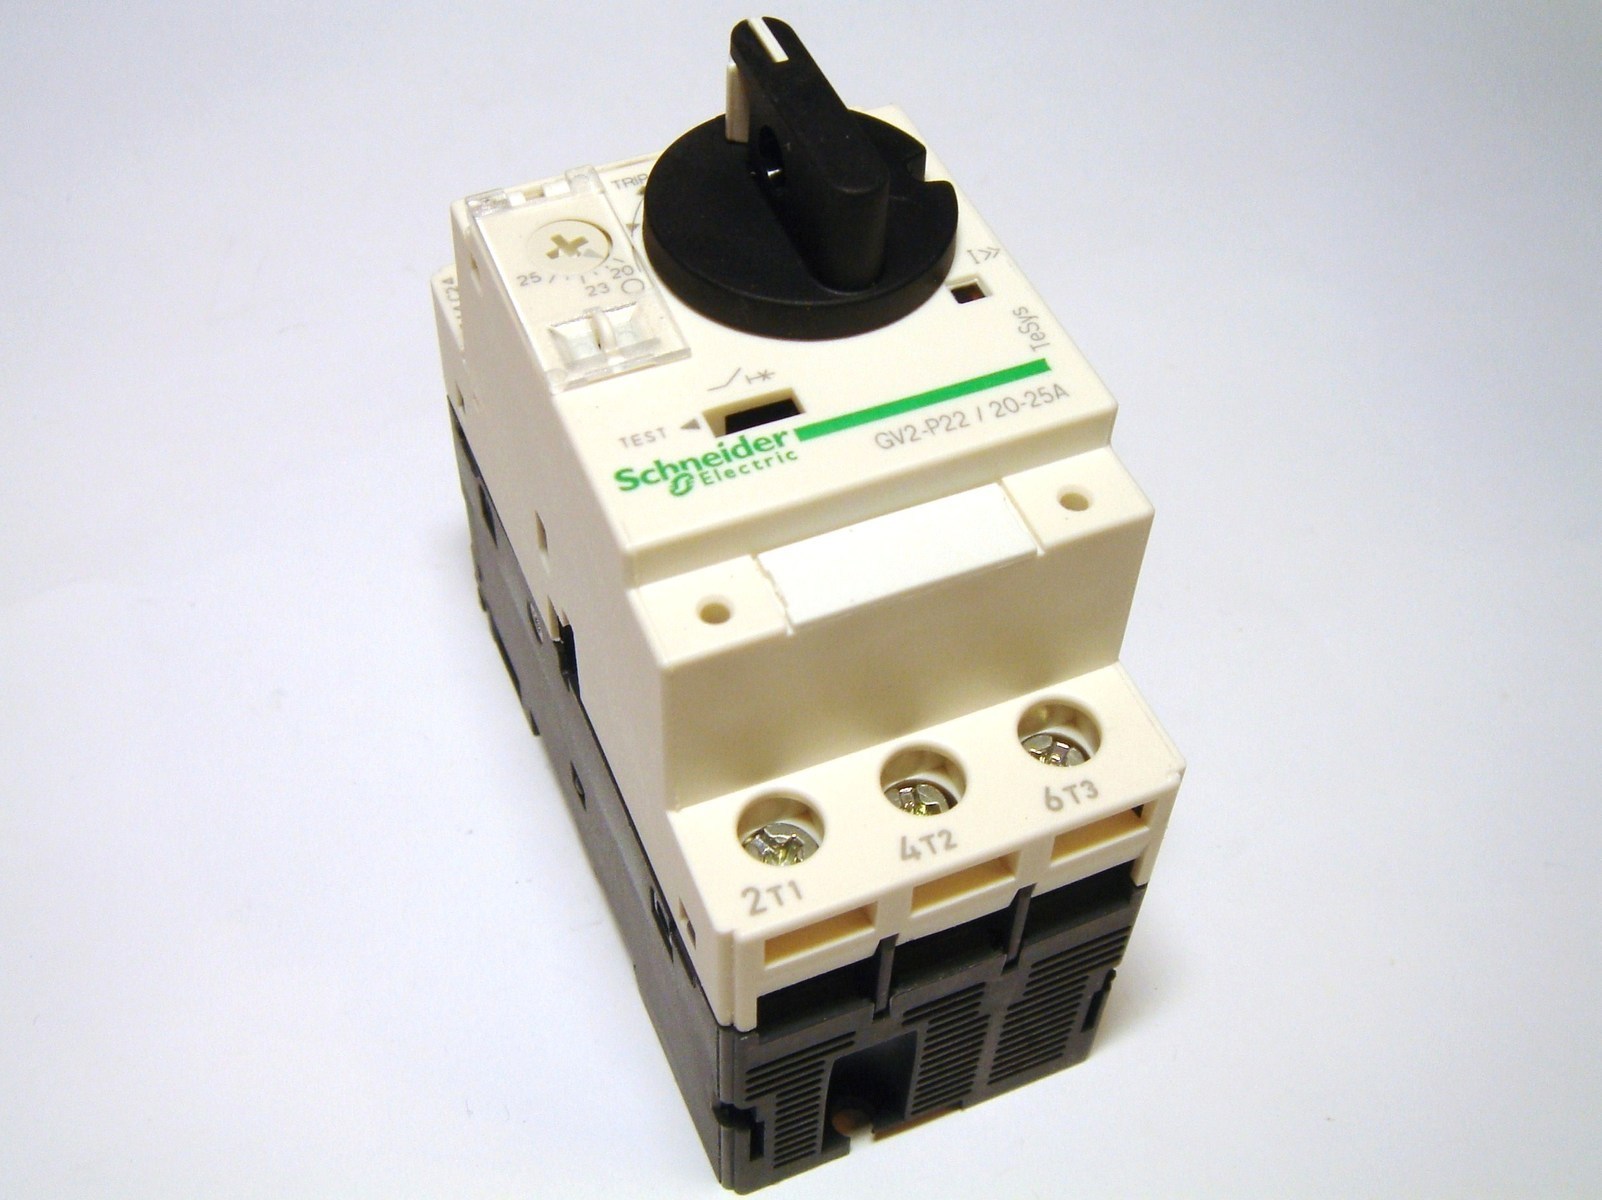 Автоматический выключатель с6. Шнайдер gv2. Автоматический выключатель двигателя Schneider Electric 2,5-4a. Выключатель cv2-p (Schneider Electric). Автомат Шнайдер gv3p73.